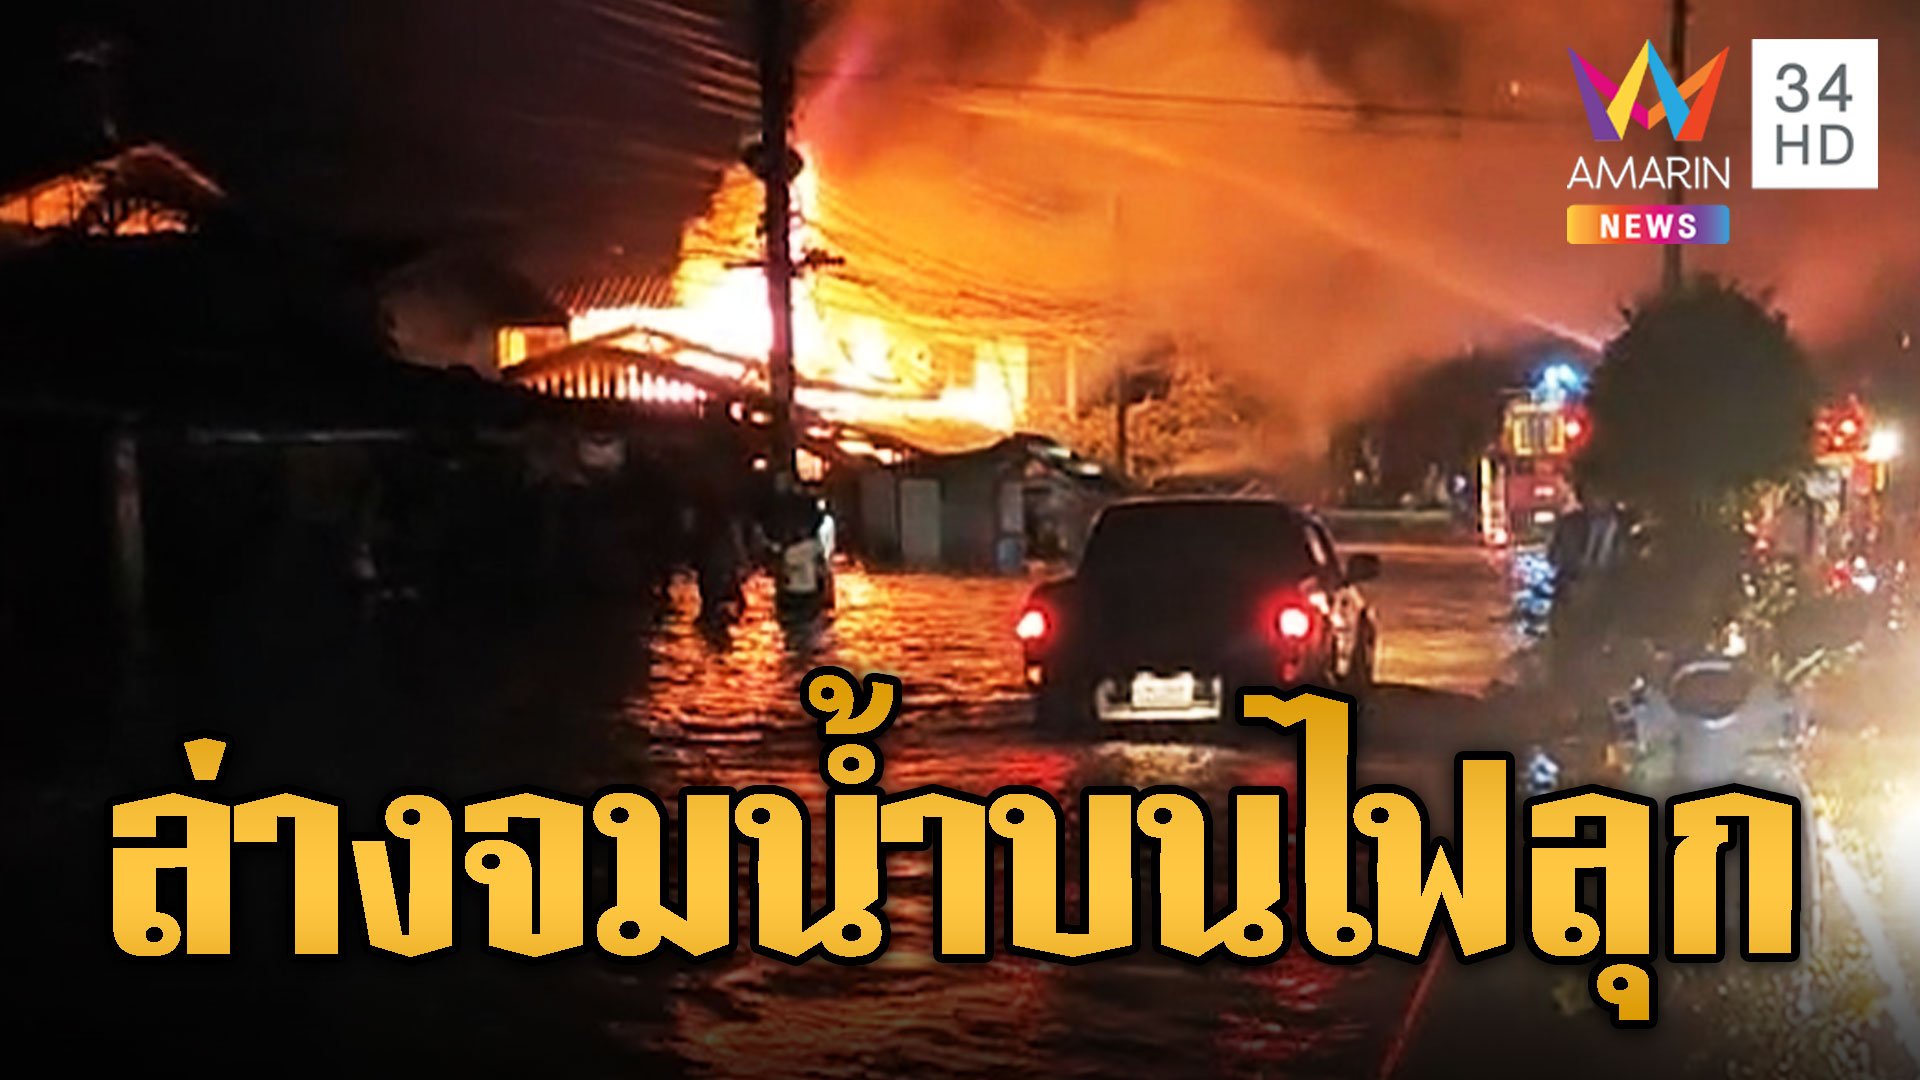 สาวนราร้องลั่น! บ้านน้ำท่วม เคราะห์ซ้ำชั้นบนไฟไหม้ | ข่าวอรุณอมรินทร์ | 27 ธ.ค. 66 | AMARIN TVHD34